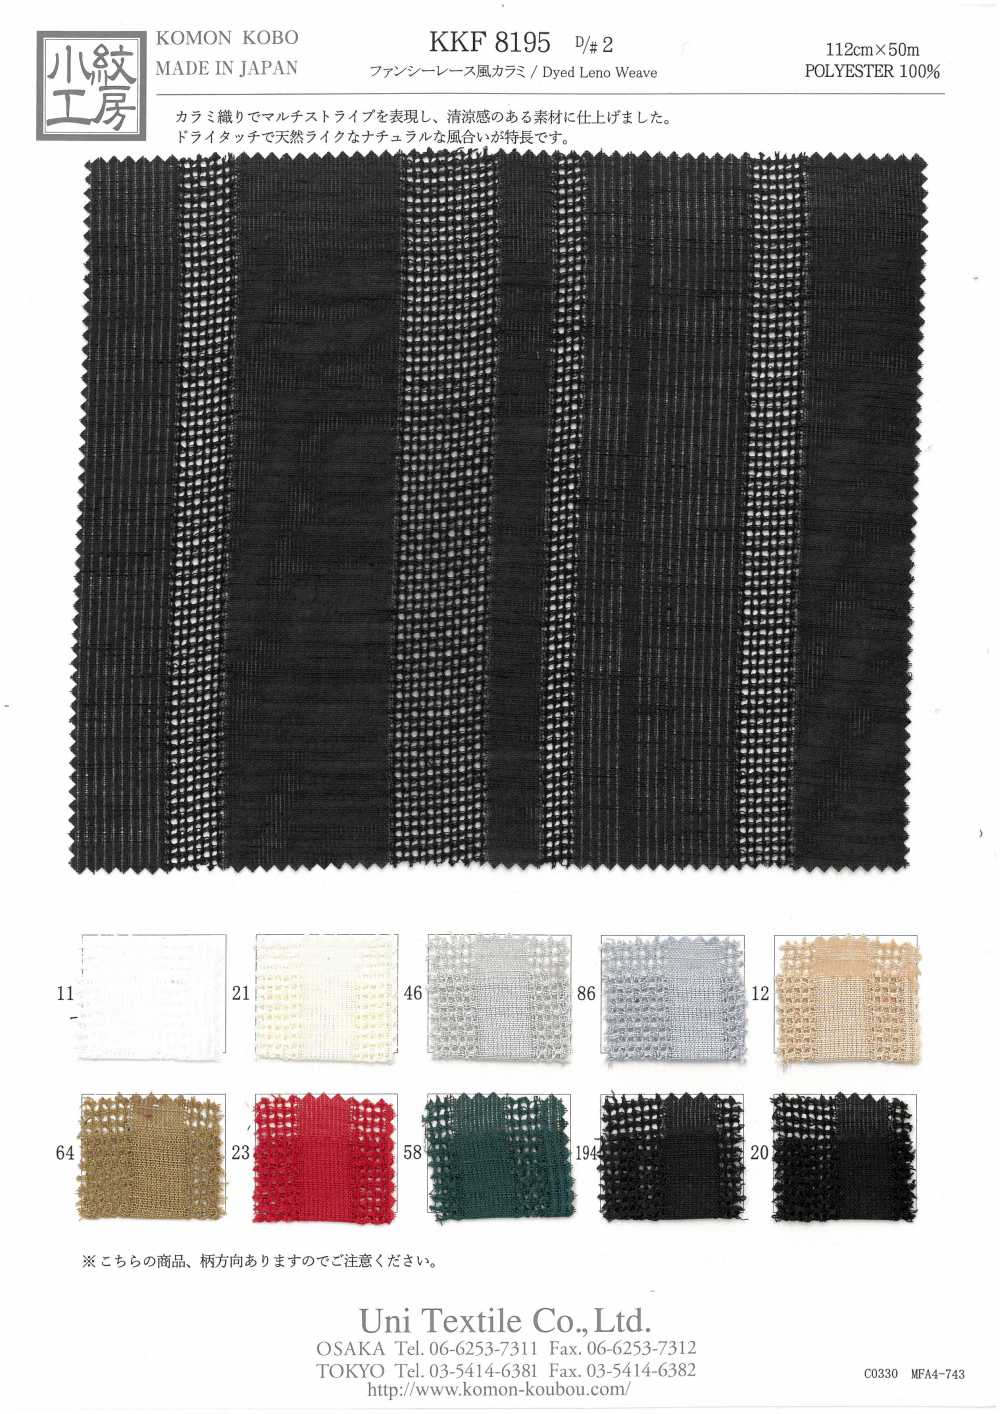 KKF8195-D/2 Tejido De Gasa Estilo Encaje Elegante[Fabrica Textil] Uni Textile